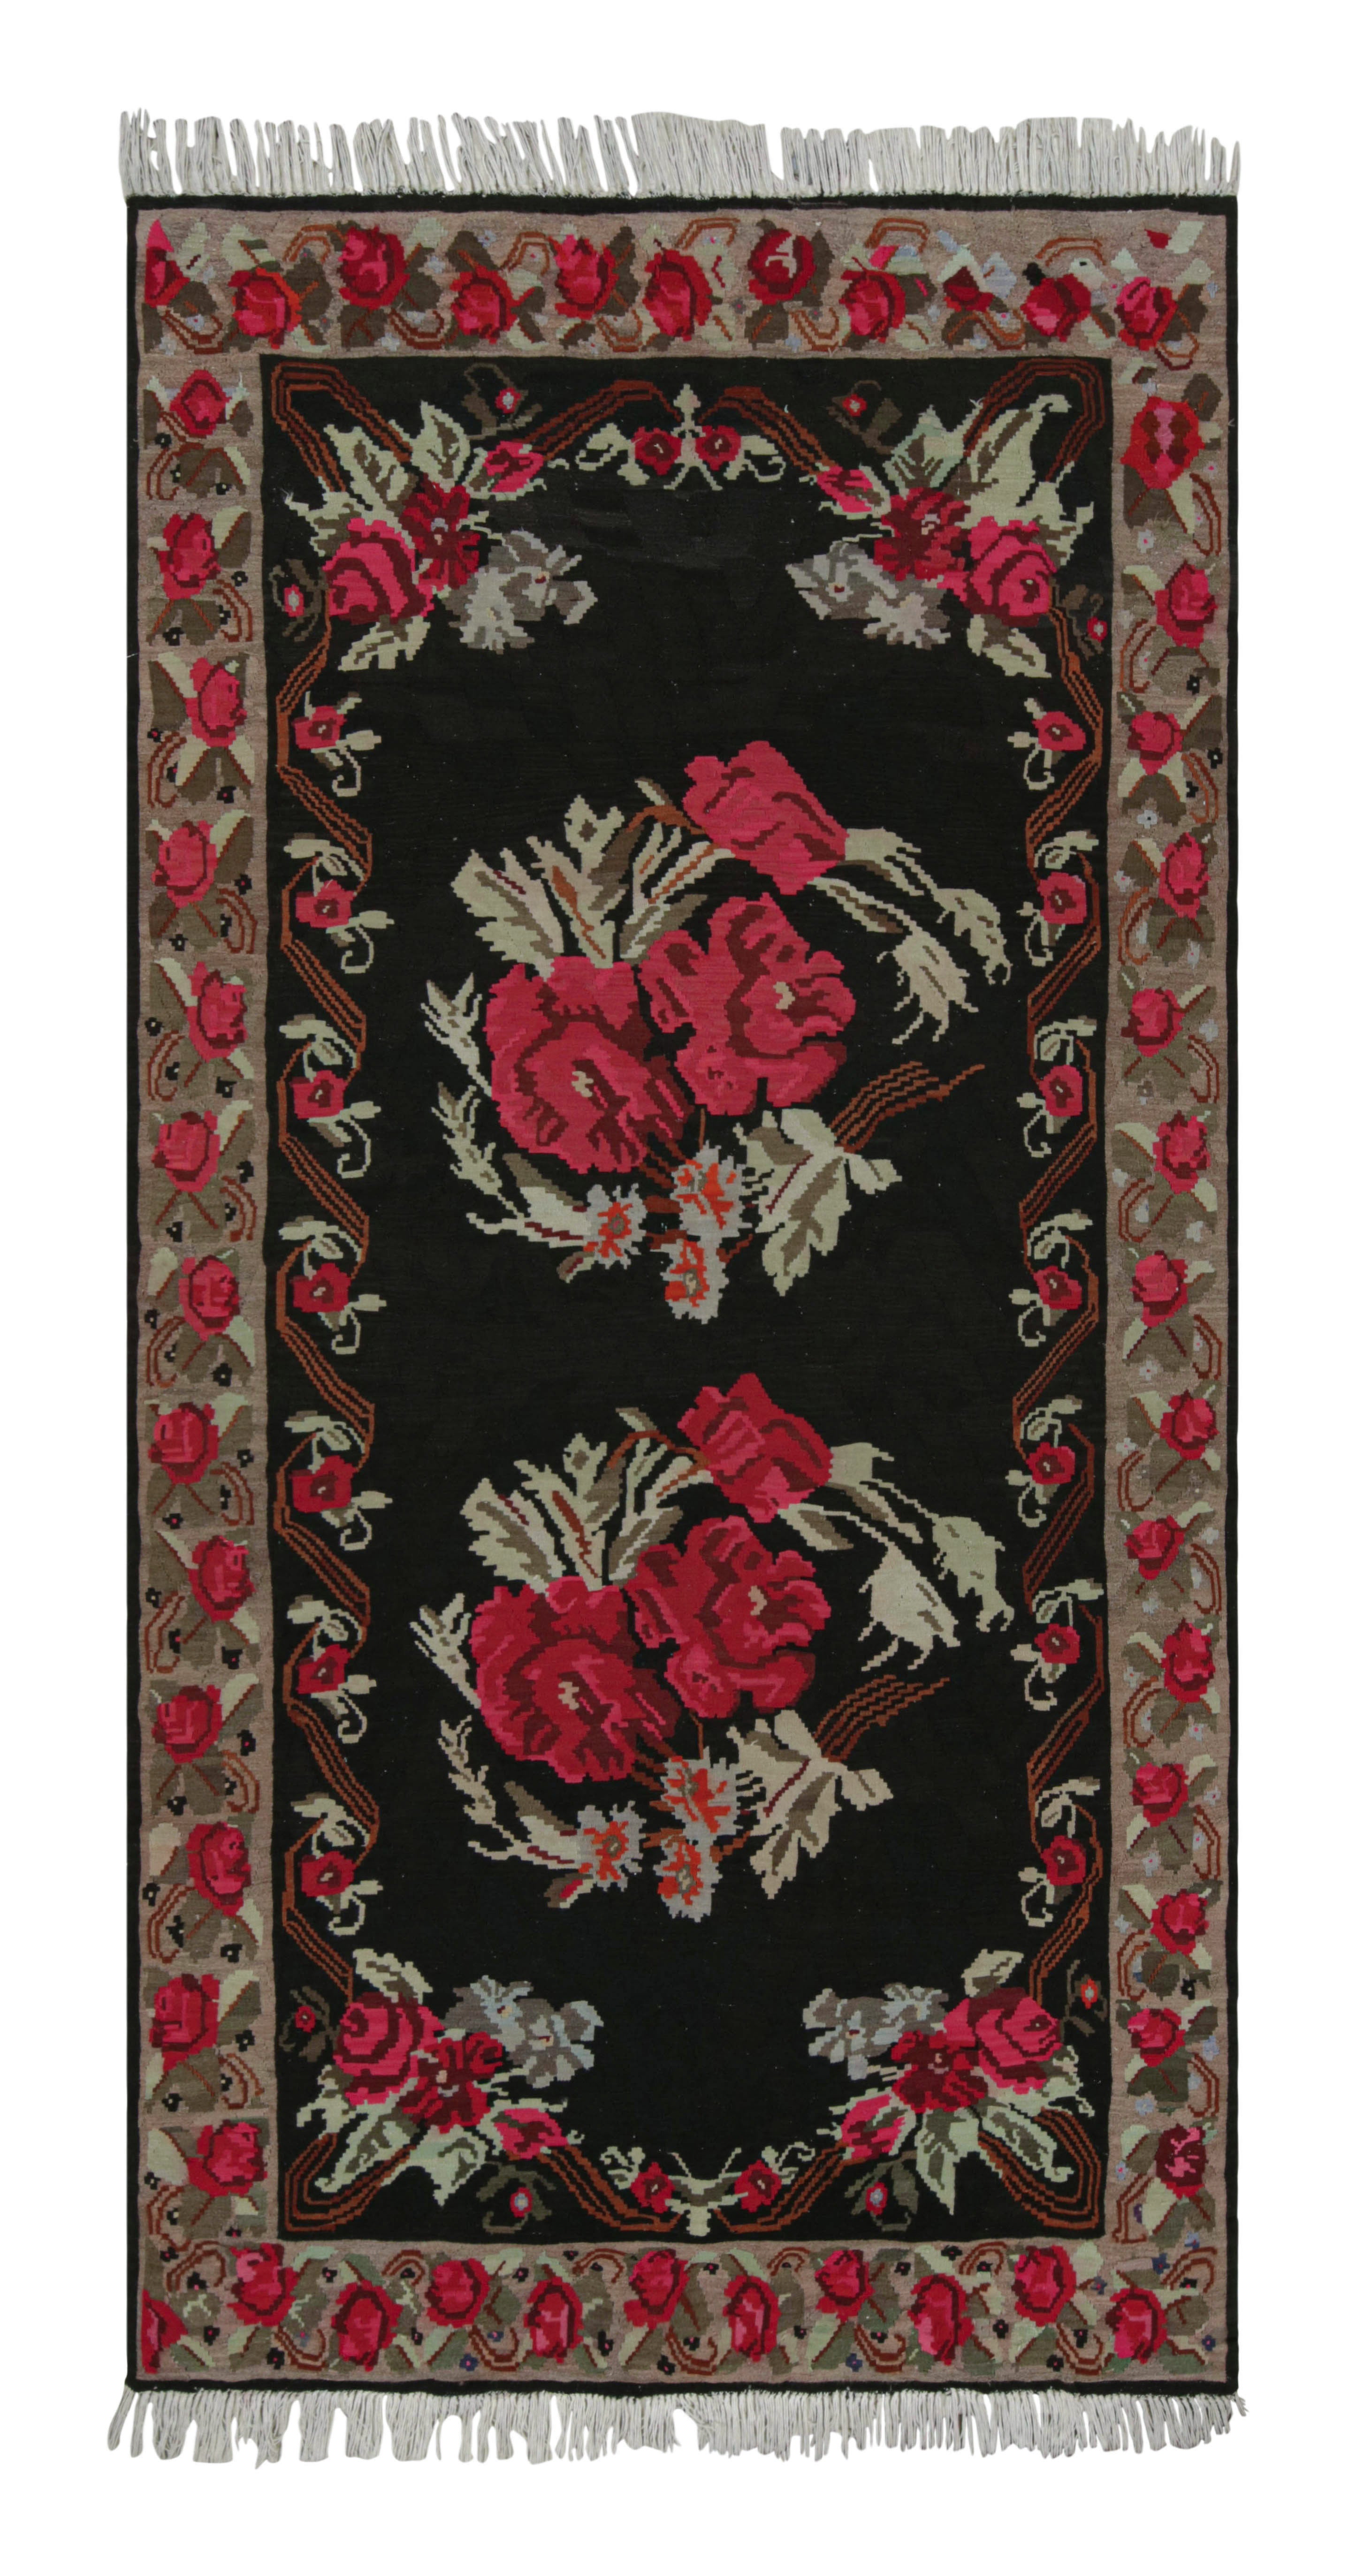 Midcentury Kilim Teppich Vintage Schwarz Rot Floral Muster Flachgewebe von Rug & Kilim